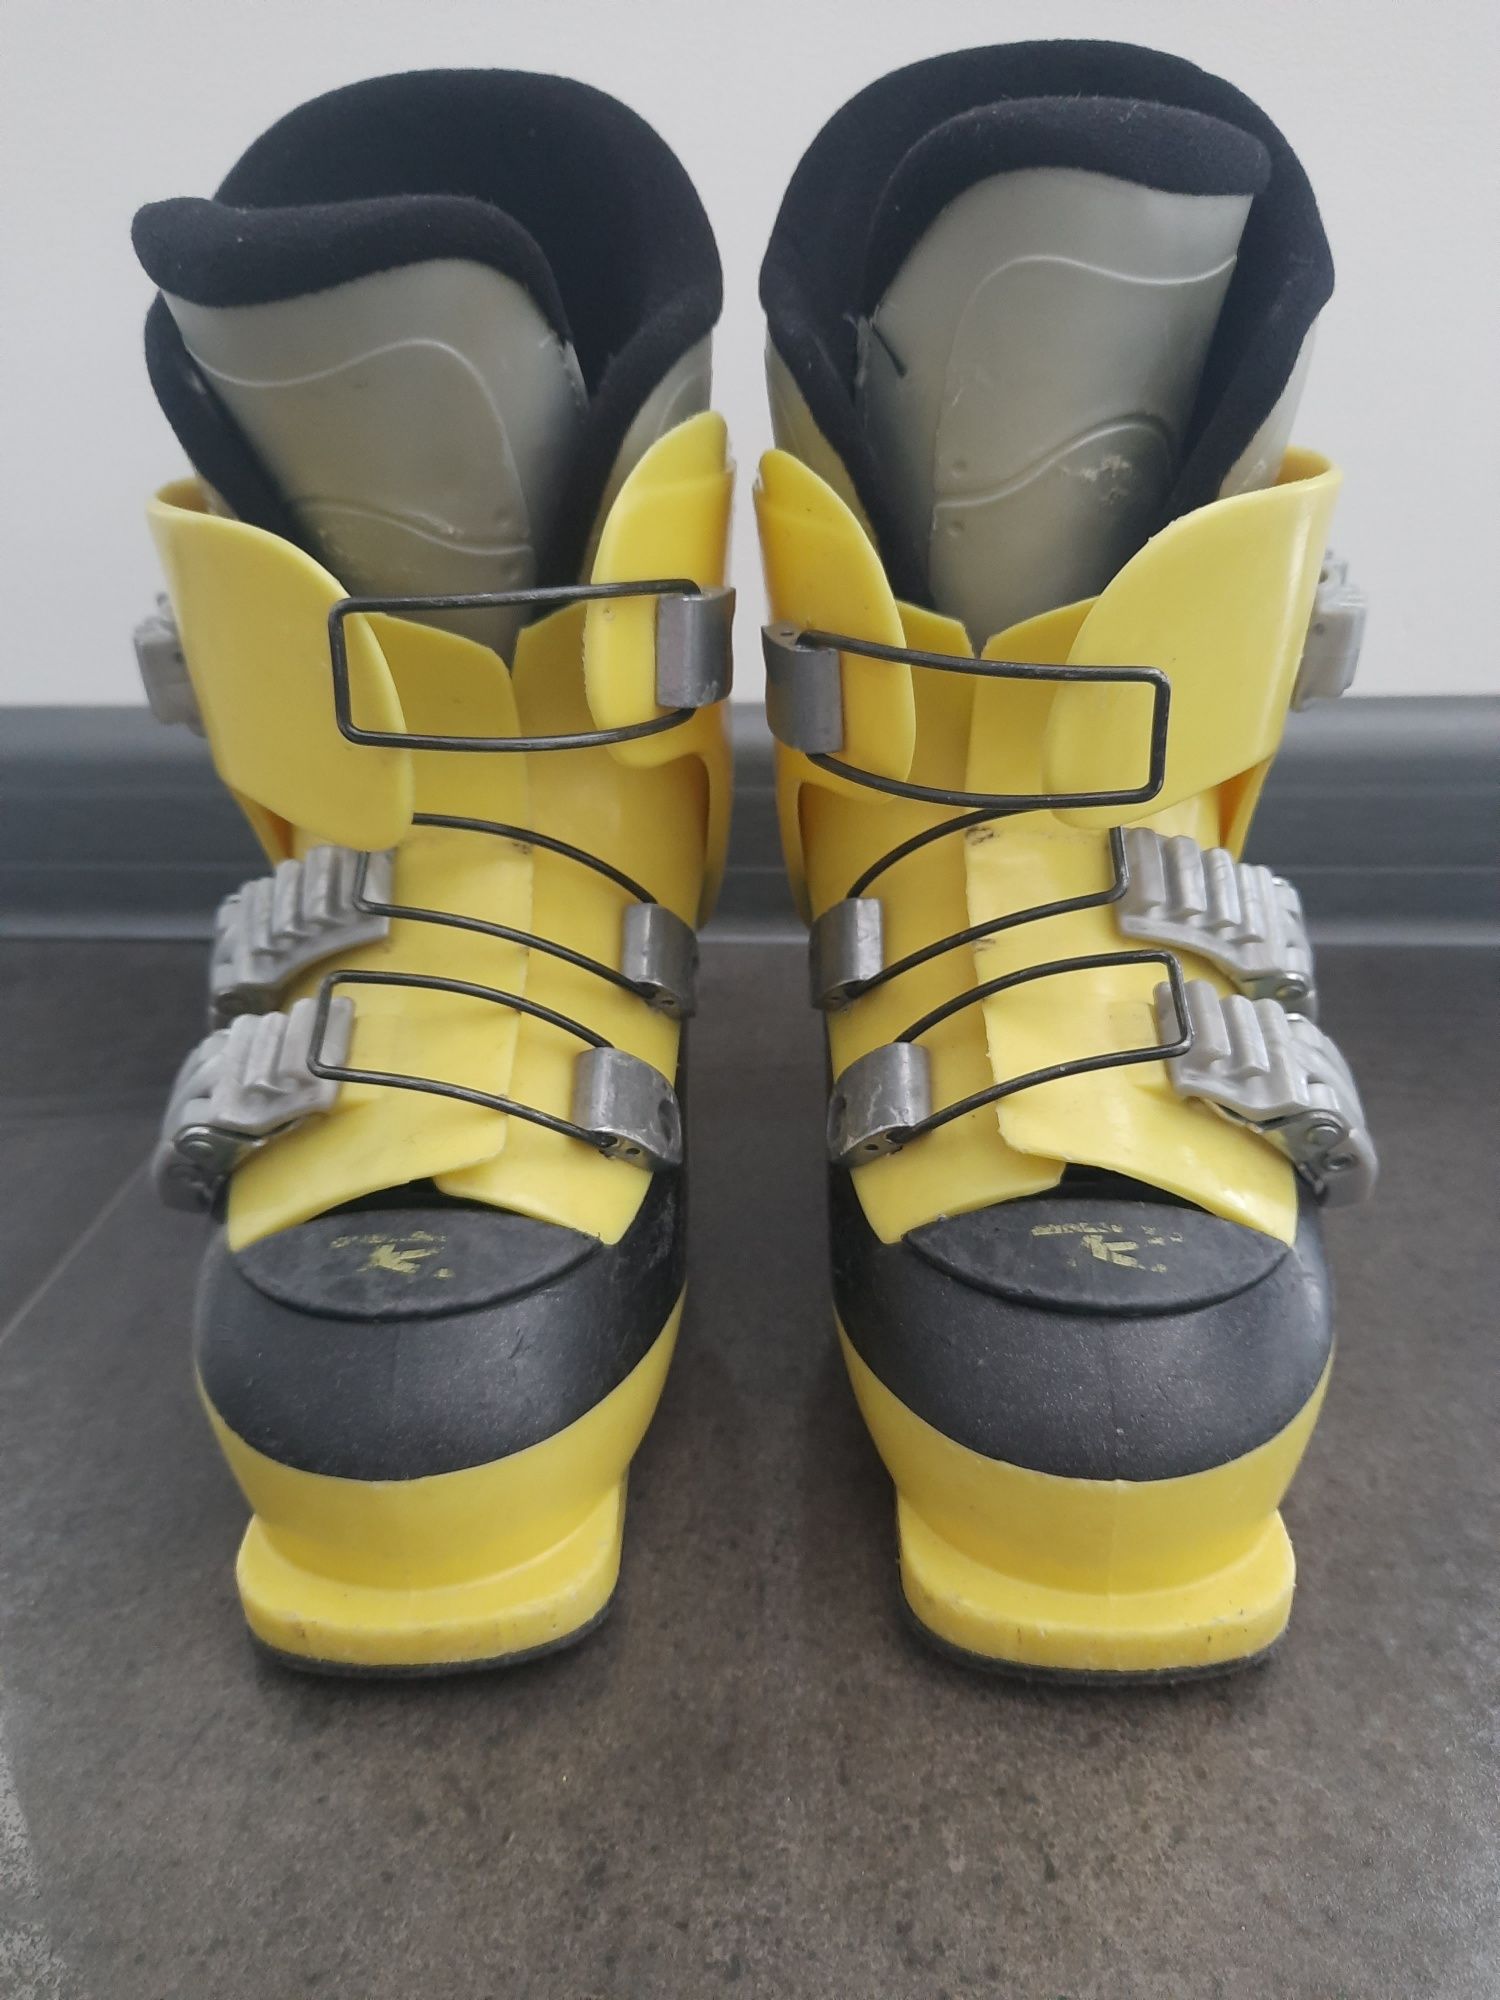 Buty narciarskie Rossignol, rozmiar. 19,50